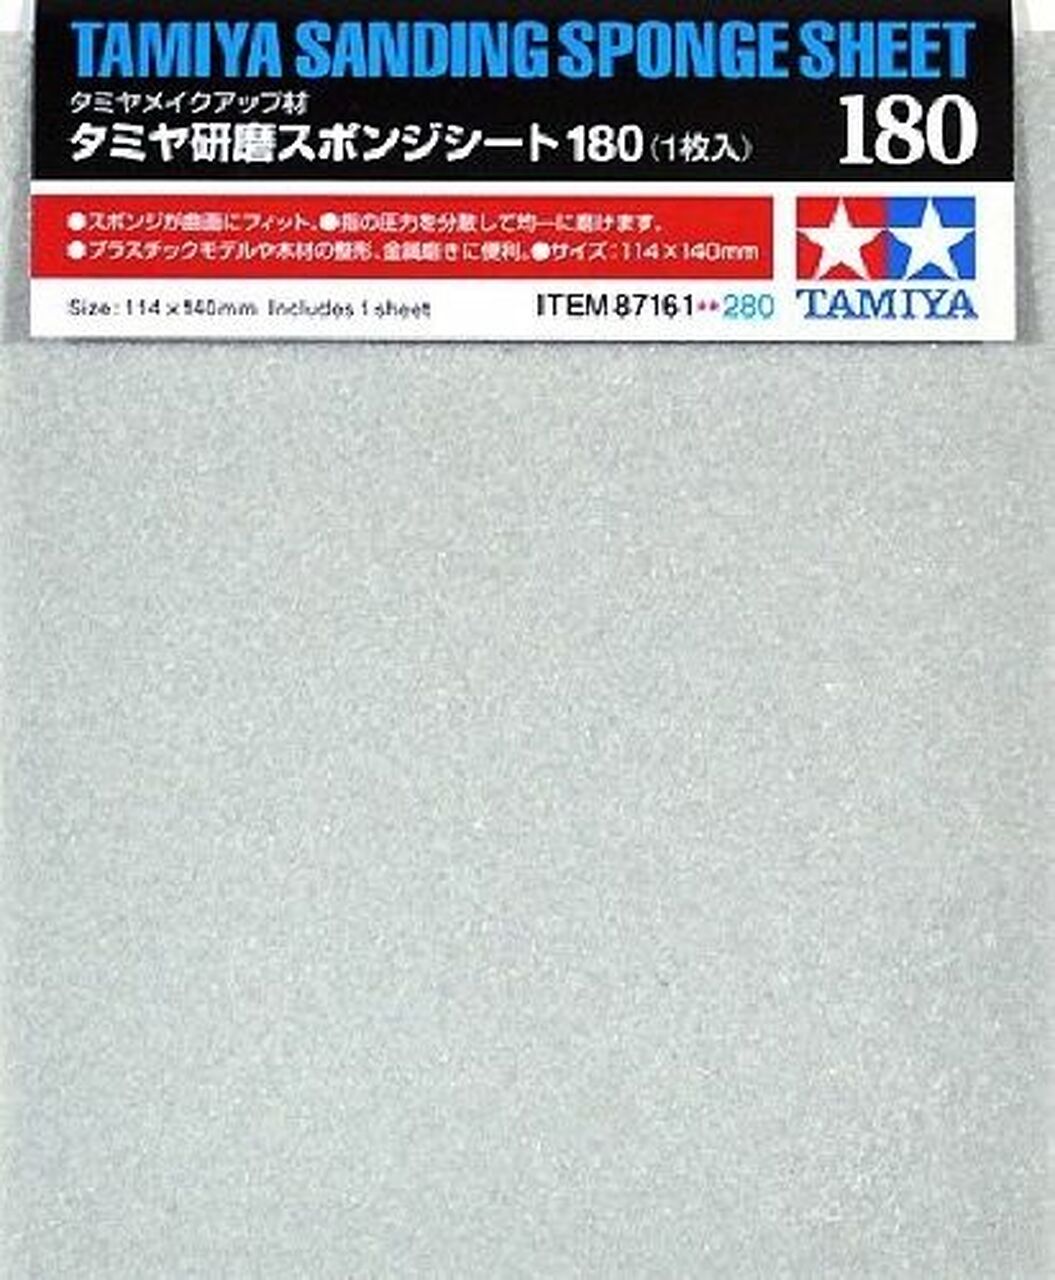 Tamiya Sanding Sponge Sheet - 180